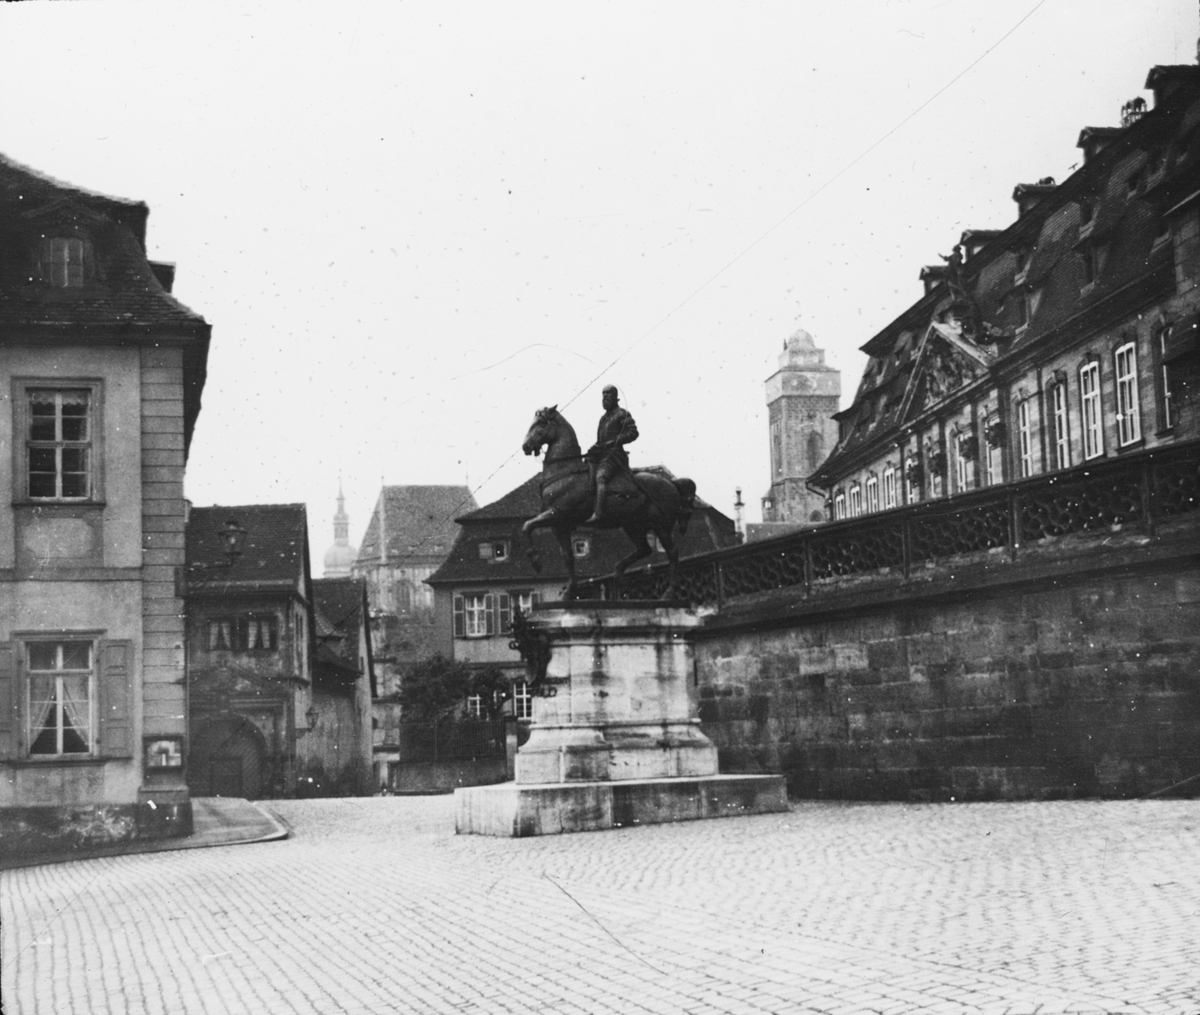 Skioptikonbild med motiv av okänd staty på torg i Bambeg.
Bilden har förvarats i kartong märkt: Resan 1906. Bamberg 8. Text på bild: "Vickes pl.".